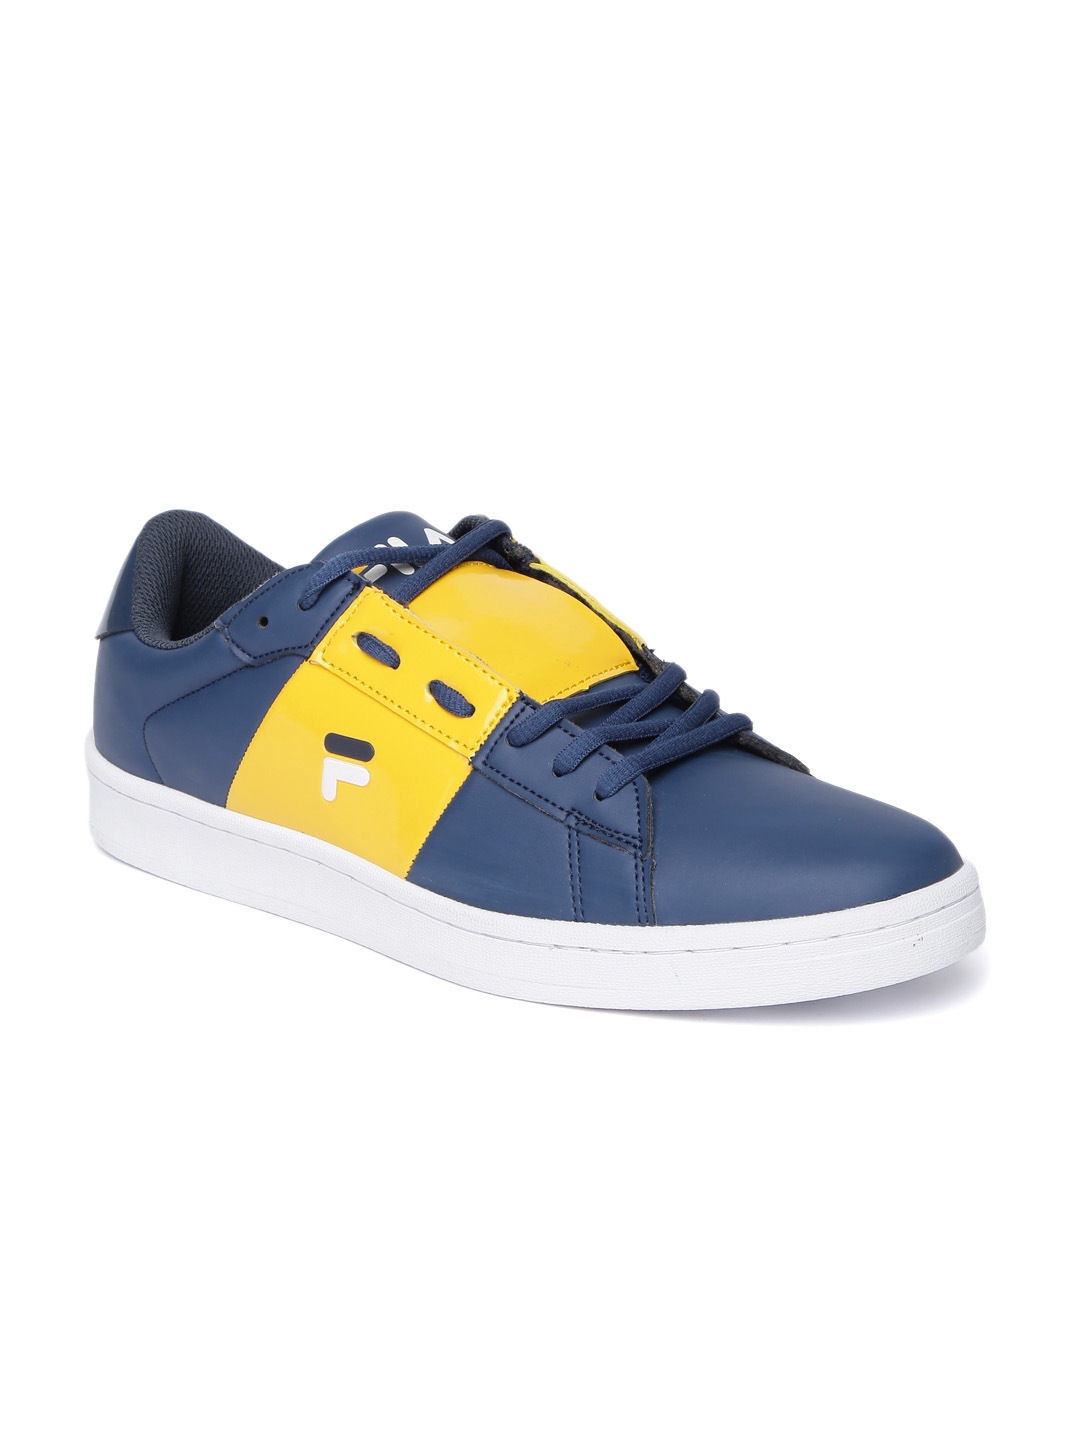 fila sneakers navy blue